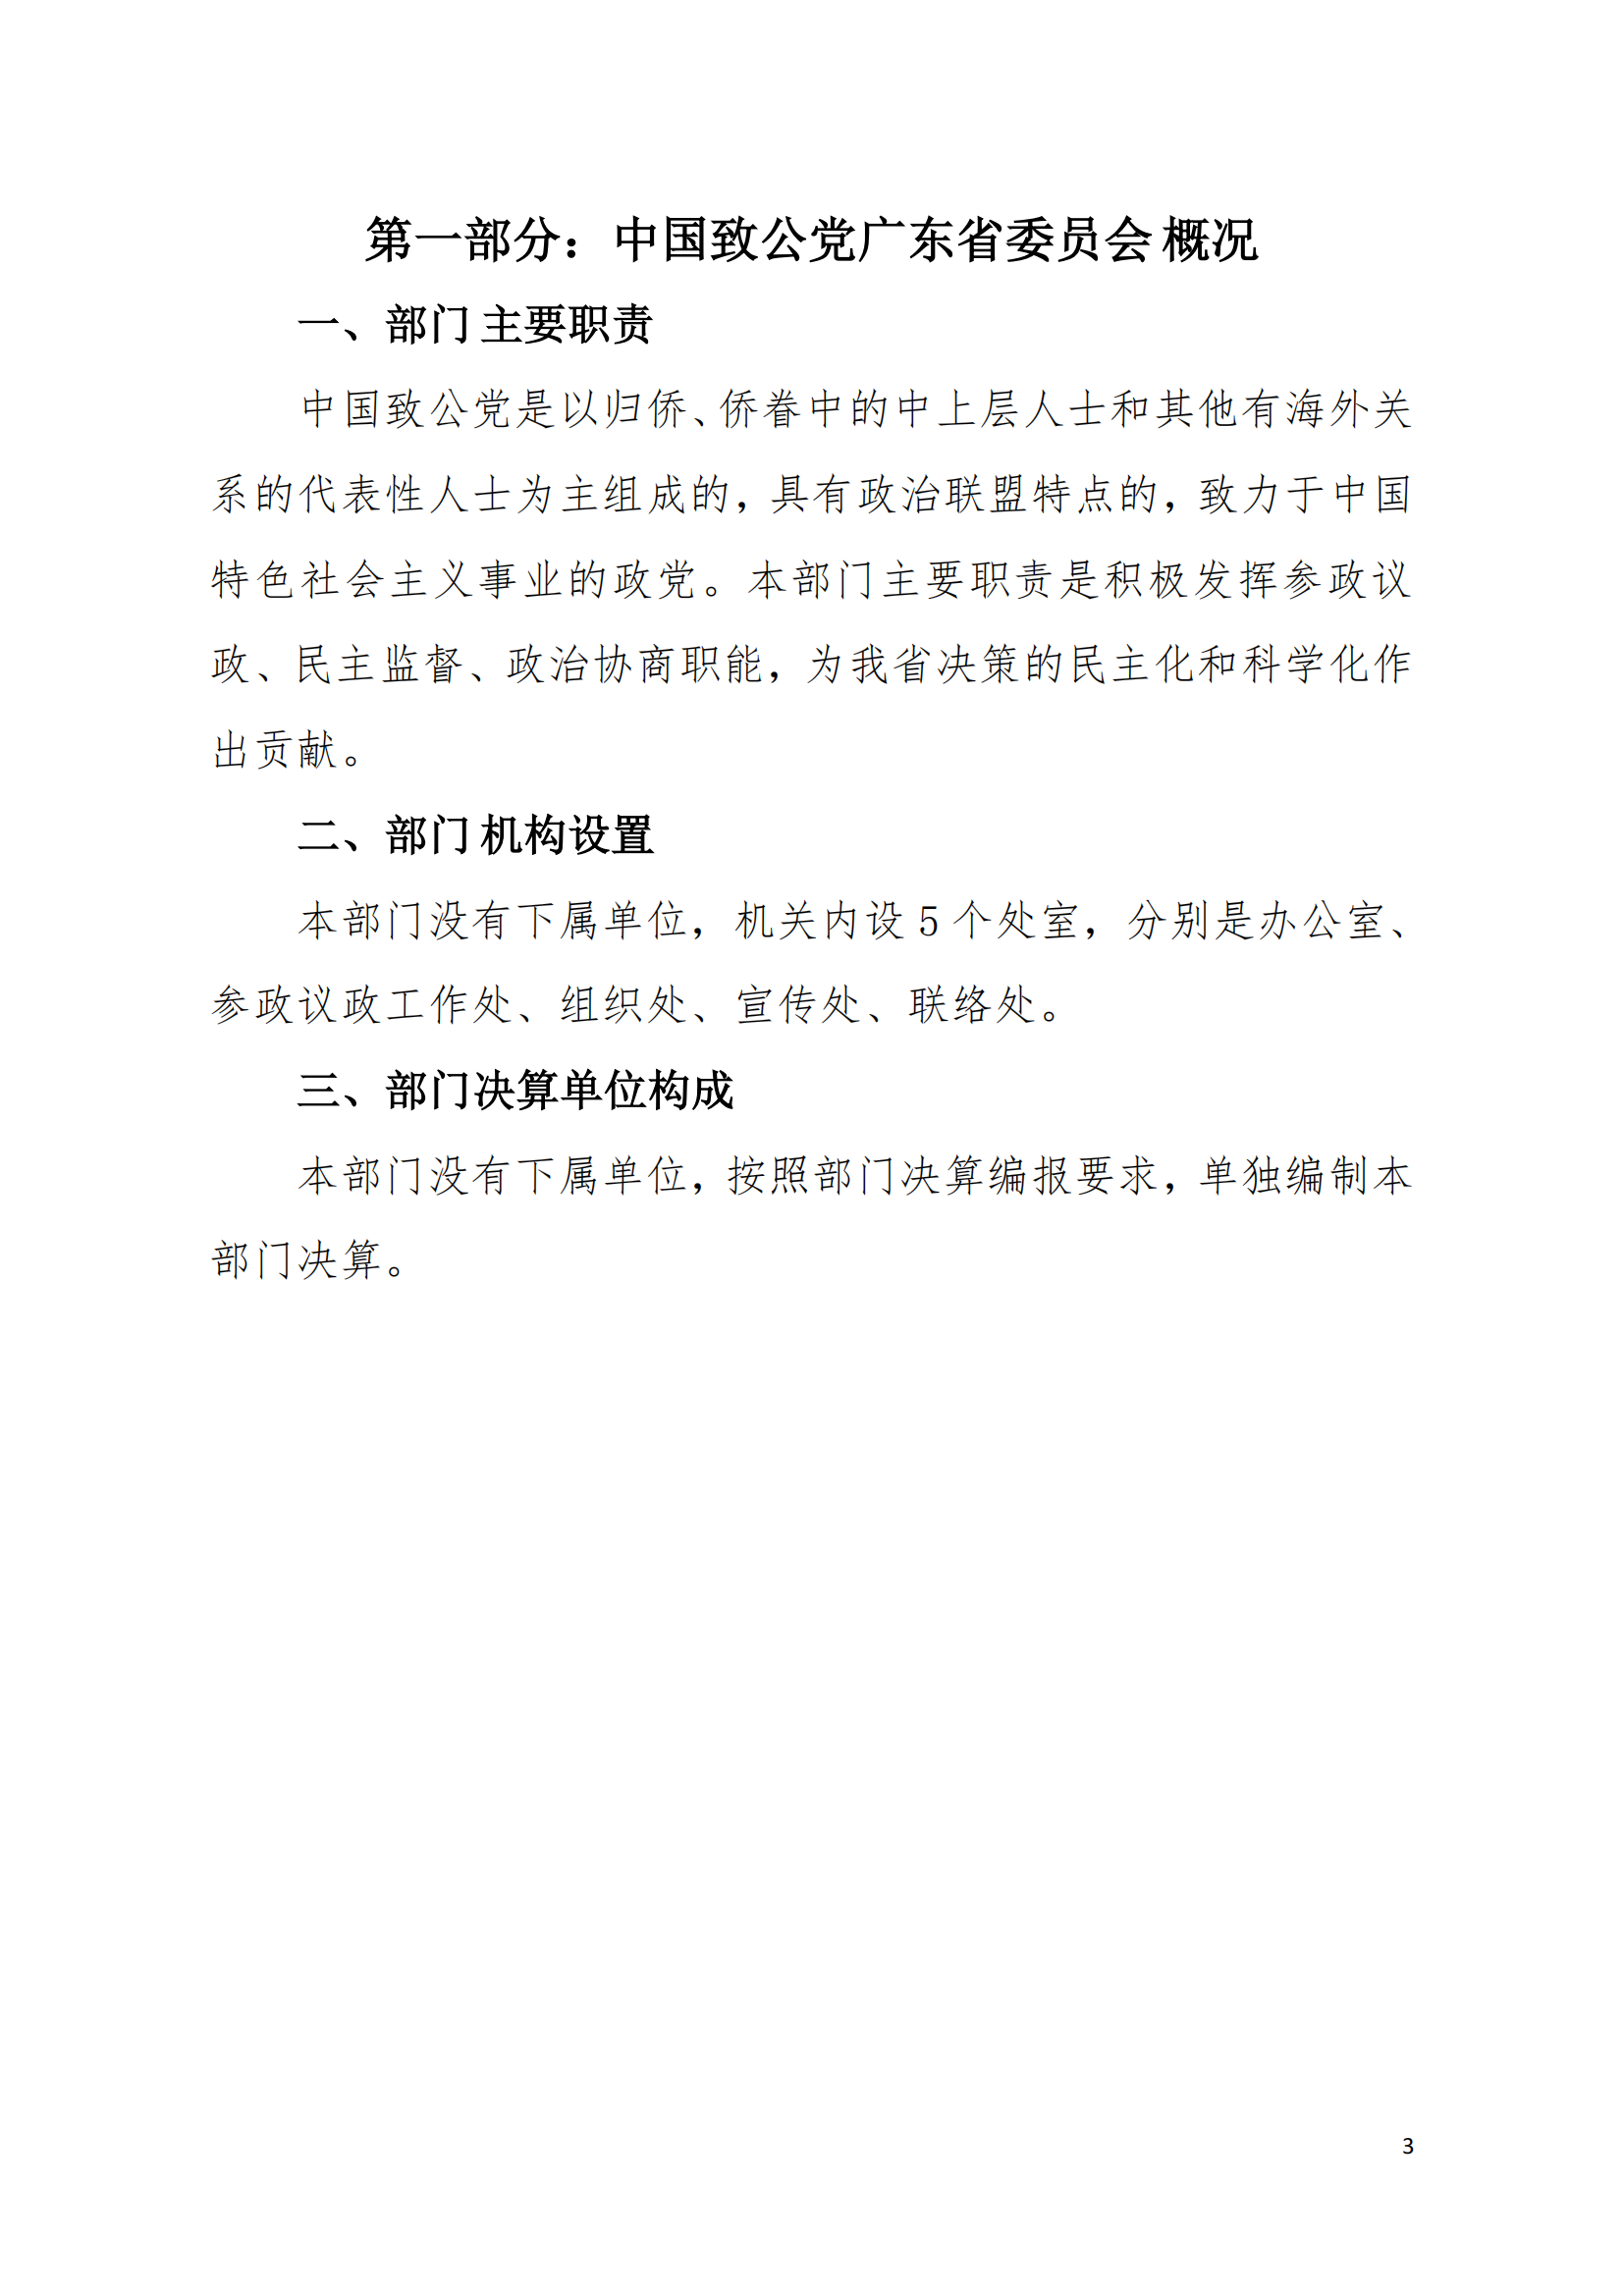 2021年中国致公党广东省委员会部门决算（0706更新）_02.png